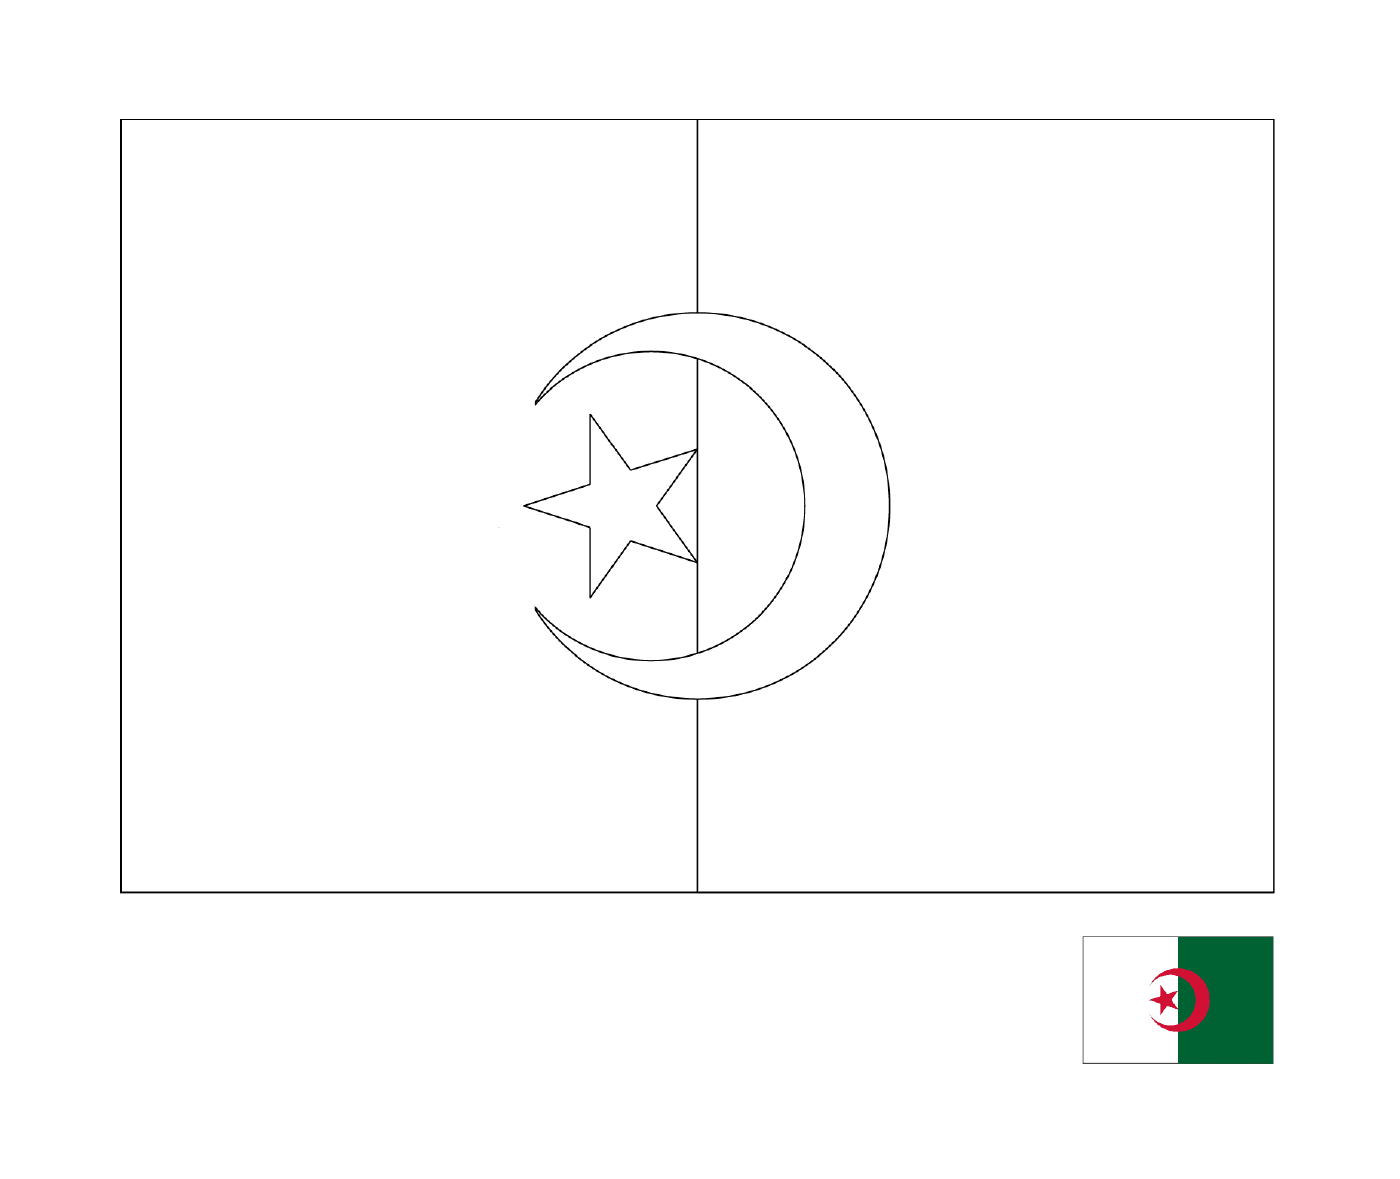  阿尔及利亚国旗 